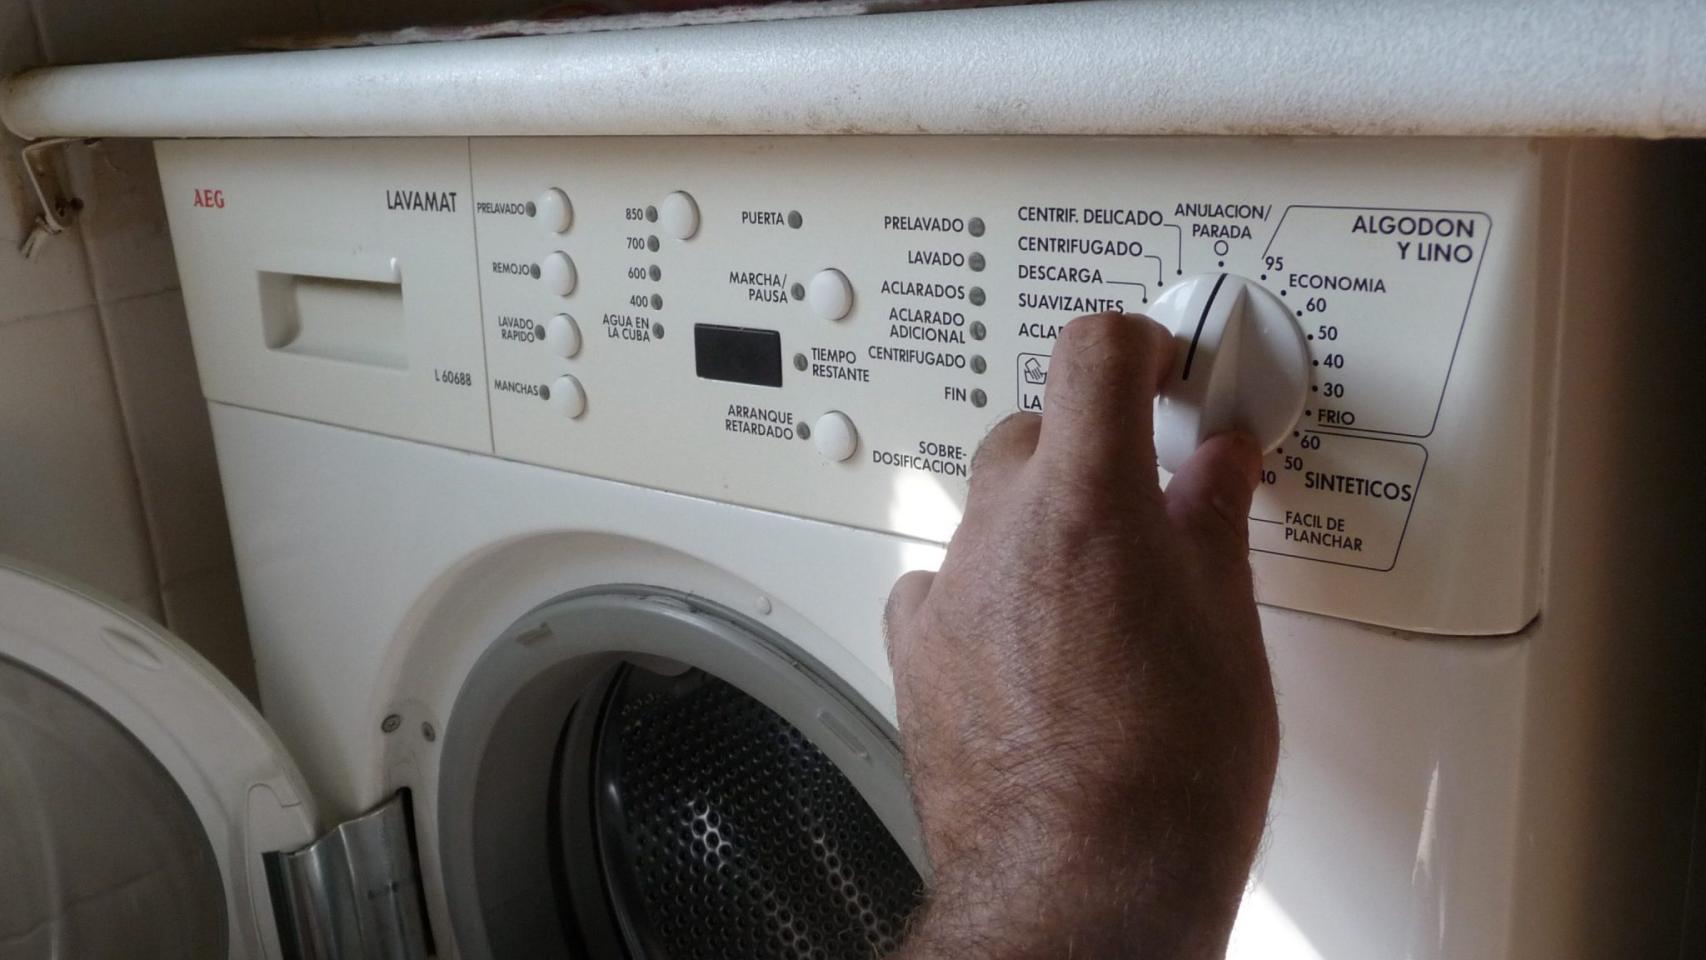 El truco de la lavadora para no planchar camisetas y camisas